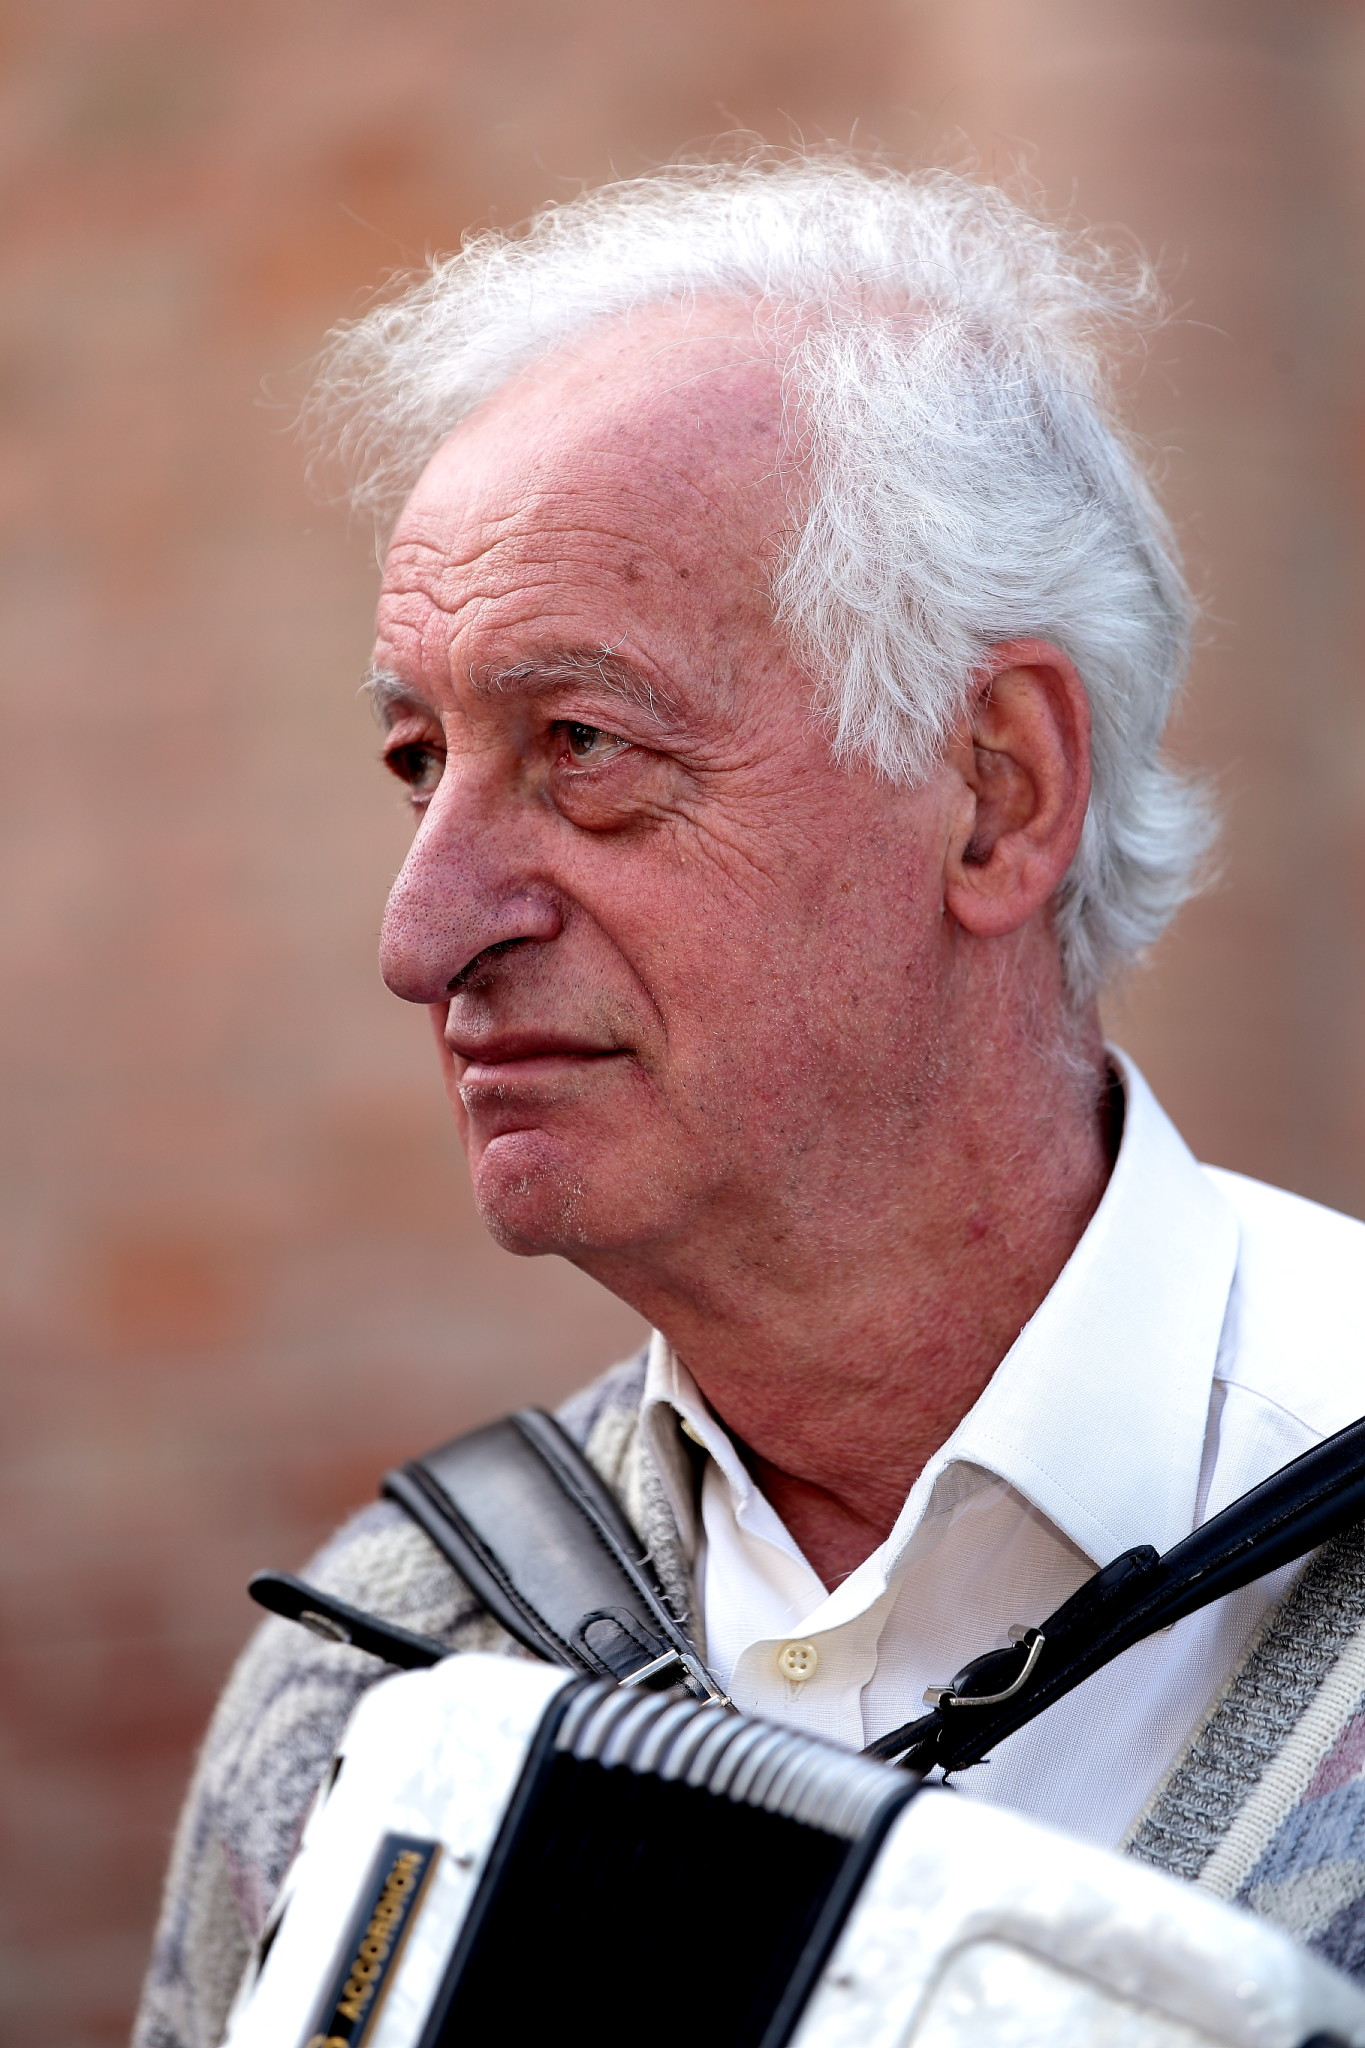 Giuliano Piazza. Bazzano (Bo), 2013.